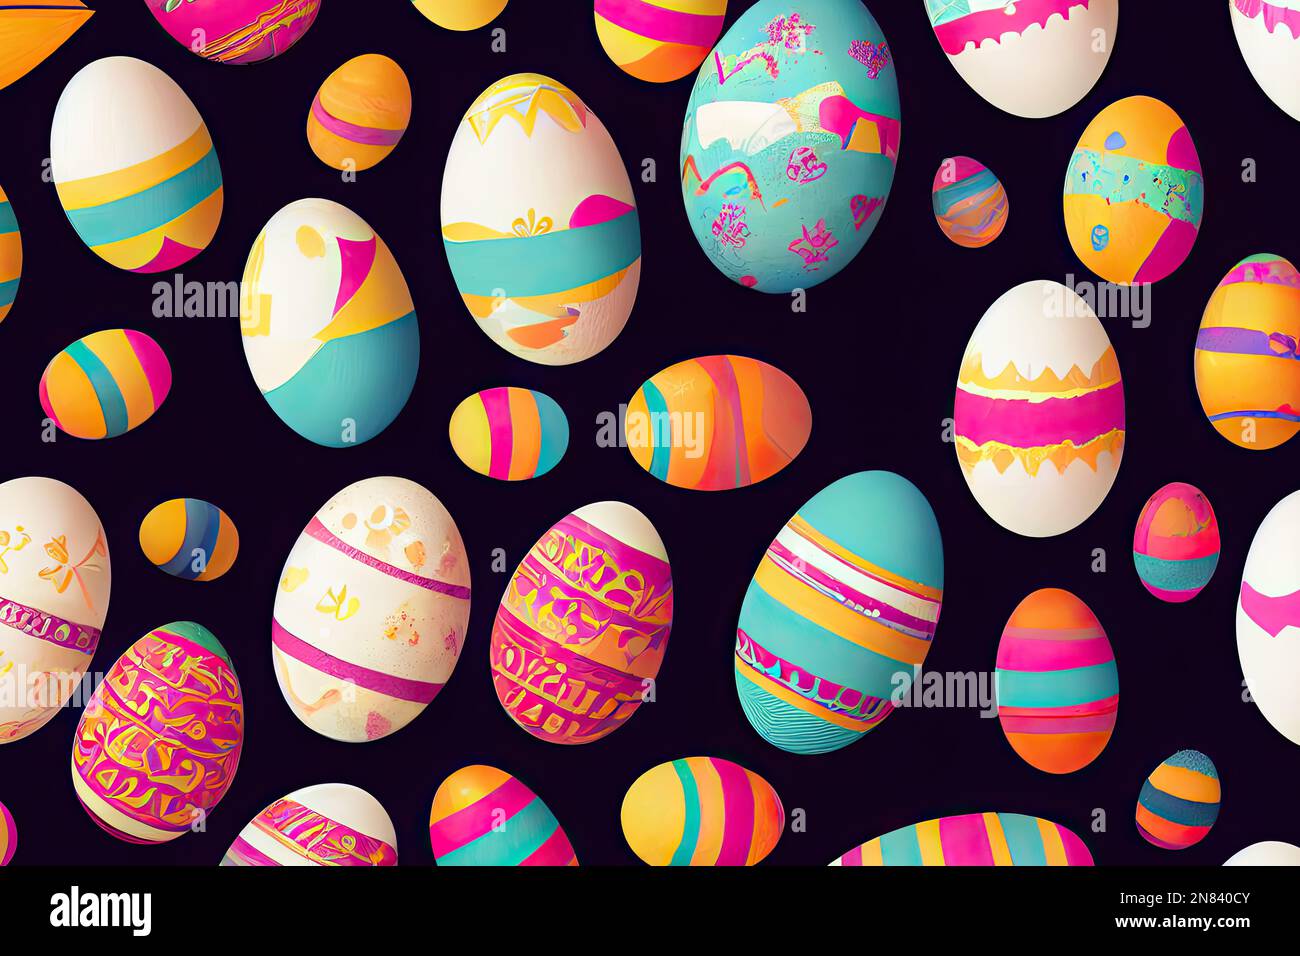 Una cartolina artistica mostra una collezione di uova di Pasqua in una vibrante gamma di colori, disposti in uno stile piatto su uno sfondo nero audace. Il Foto Stock